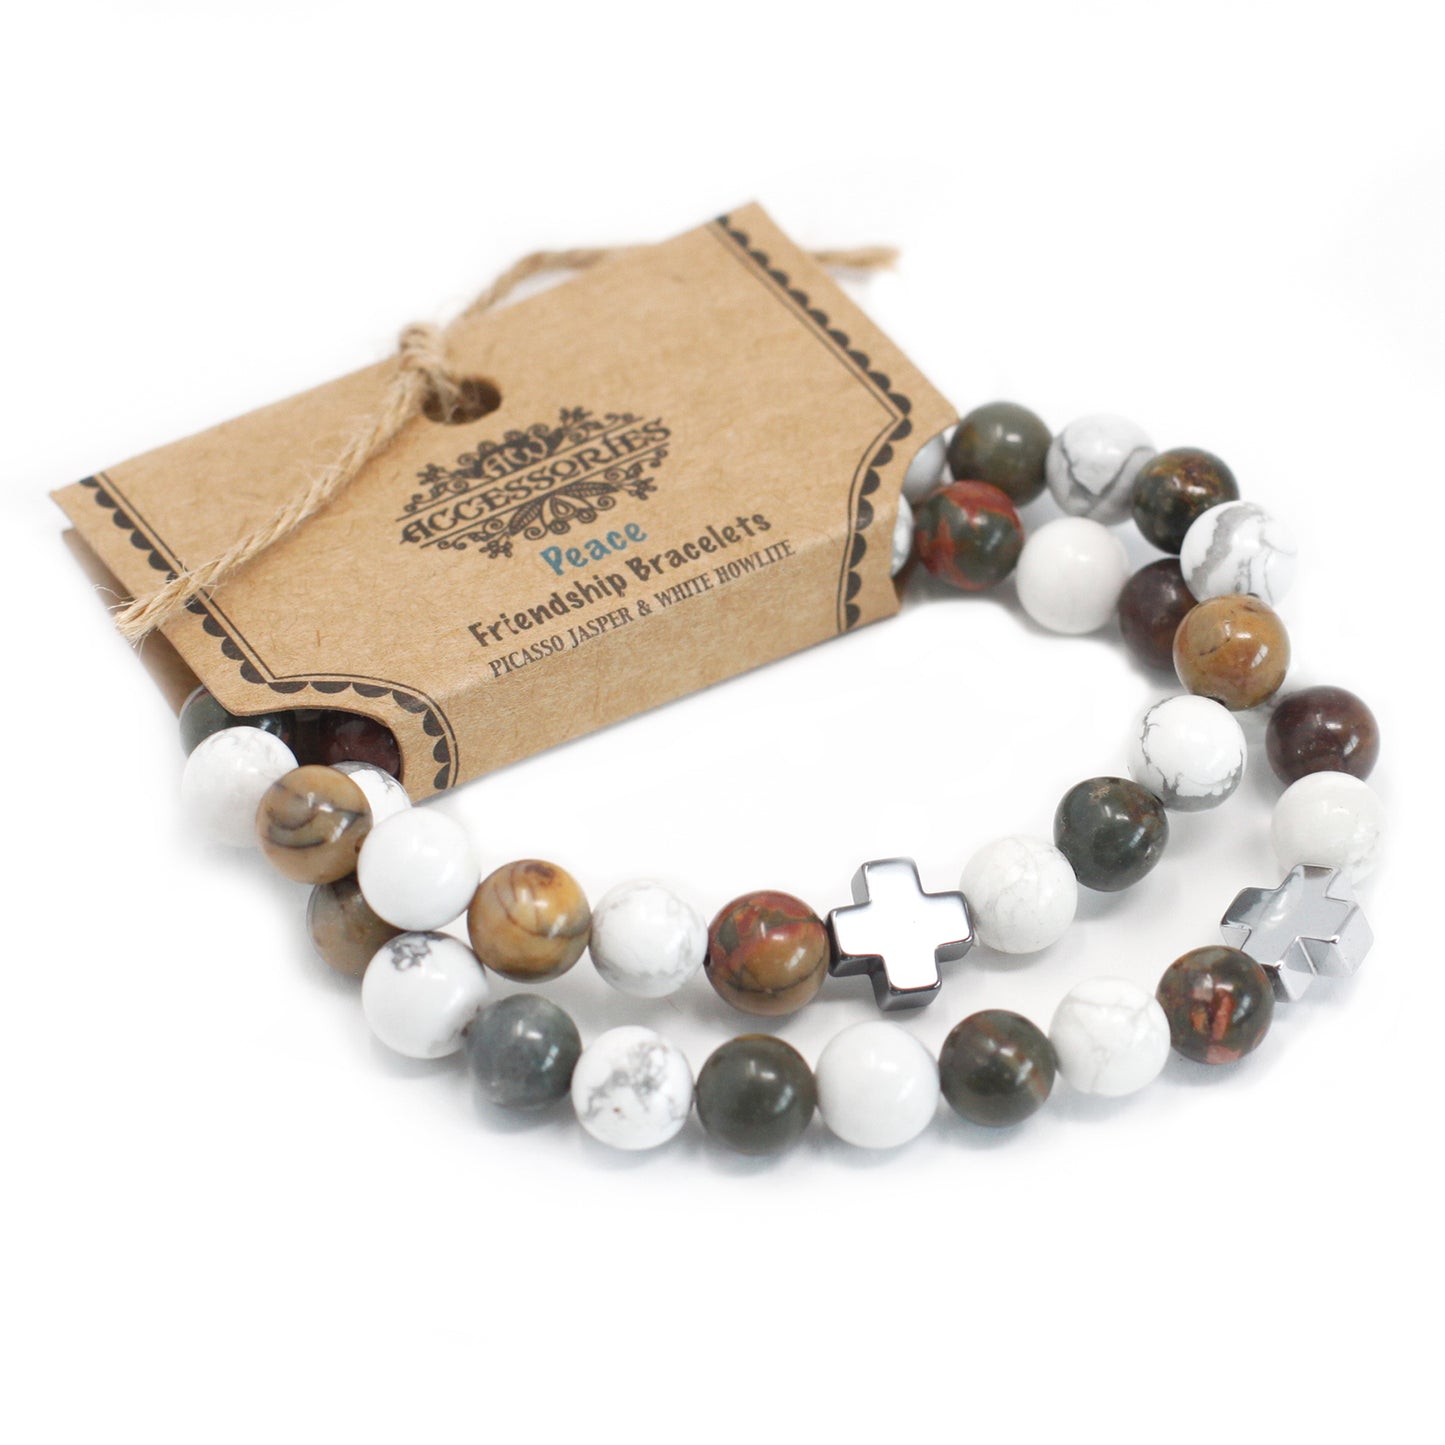 Gemstones Friendship Bracelets - Sets of 2